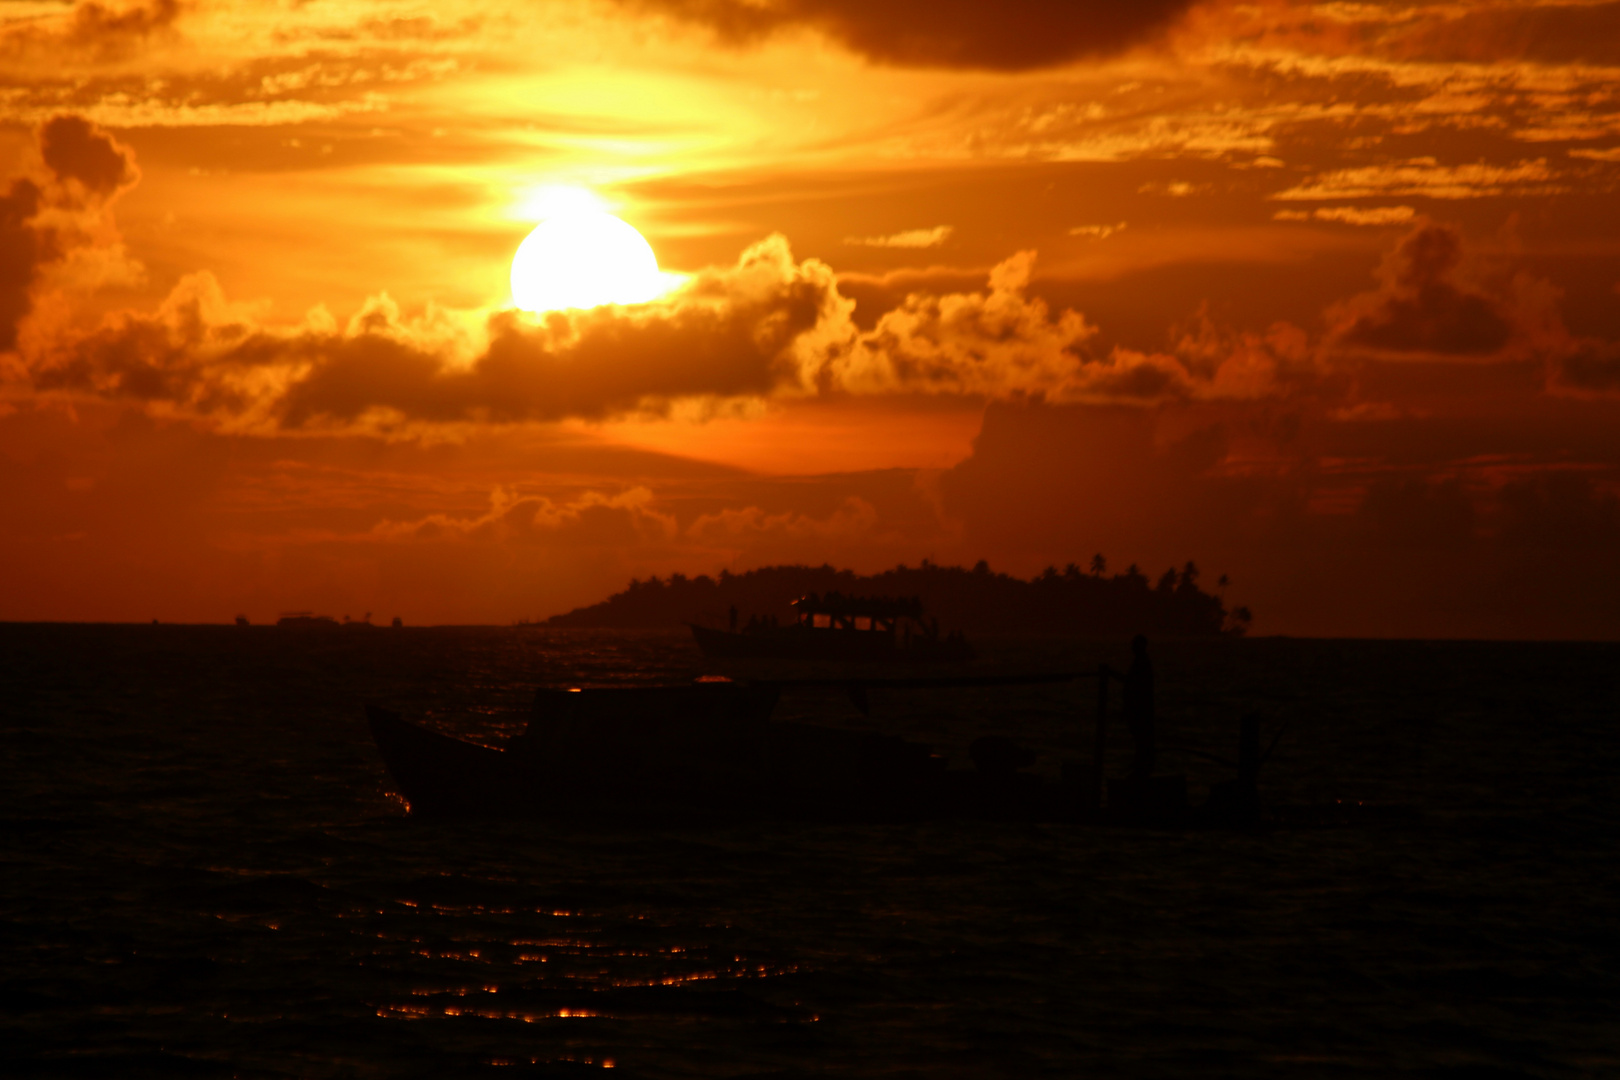 Reger Schiffsverkehr kurz vor Sonnenuntergang.